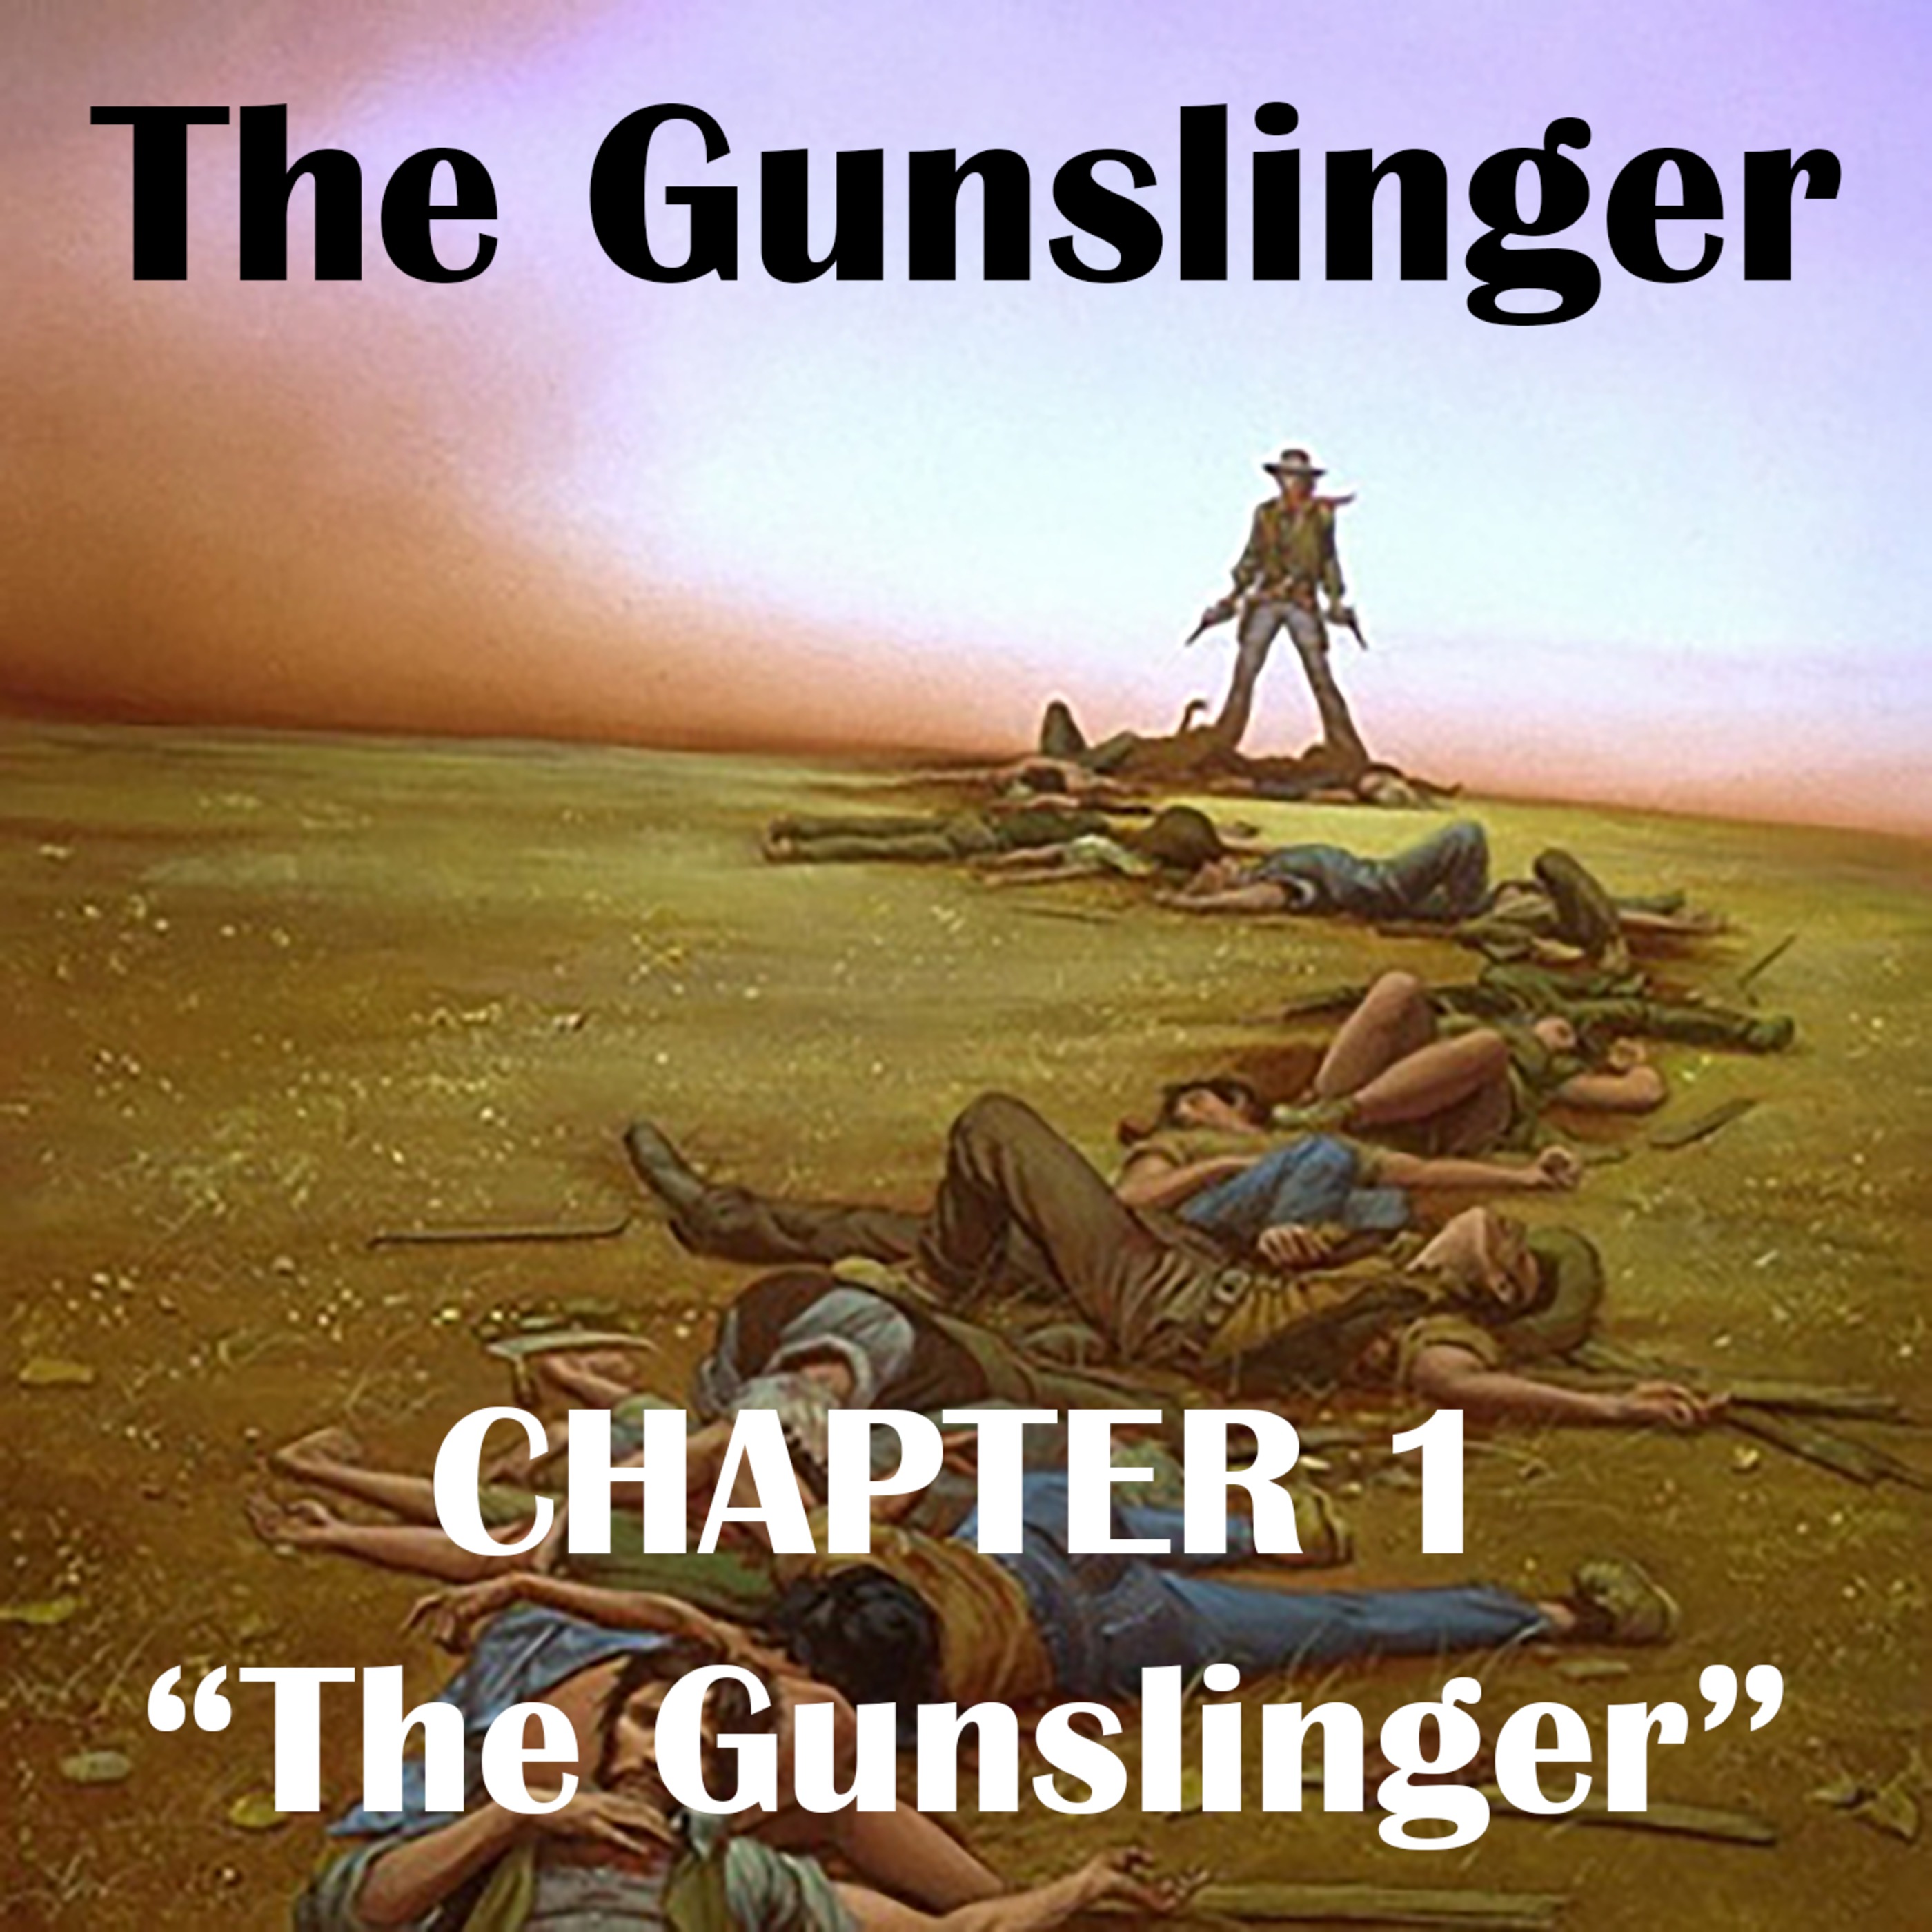 Episode 1: The Gunslinger, Chapter 1: ”The Gunslinger”